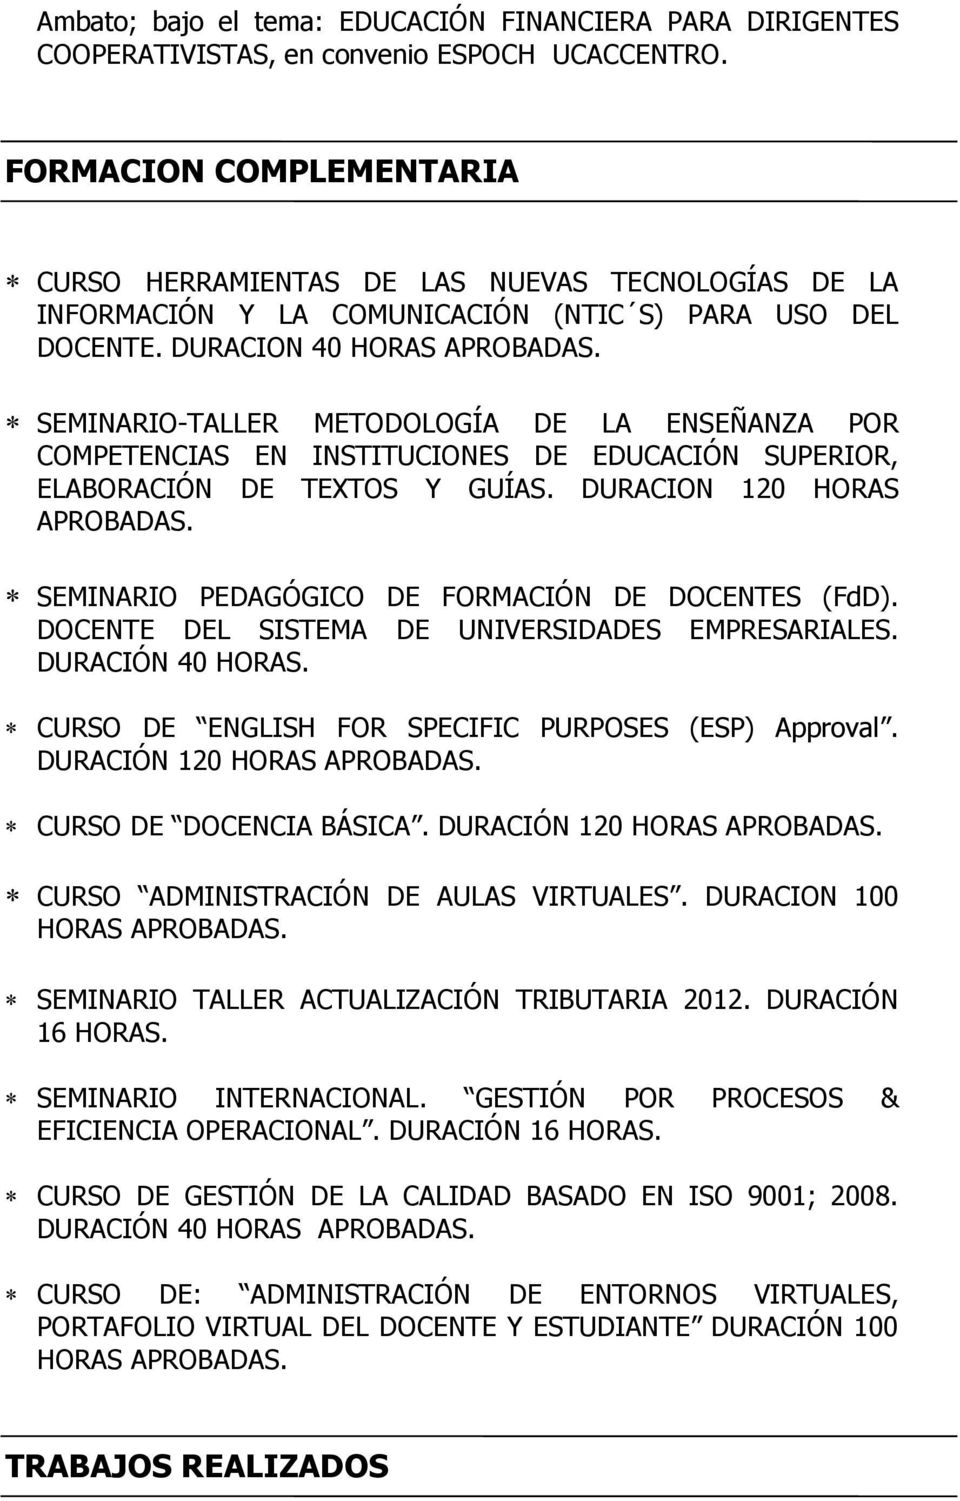 SEMINARIO-TALLER METODOLOGÍA DE LA ENSEÑANZA POR COMPETENCIAS EN INSTITUCIONES DE EDUCACIÓN SUPERIOR, ELABORACIÓN DE TEXTOS Y GUÍAS. DURACION 120 HORAS APROBADAS.